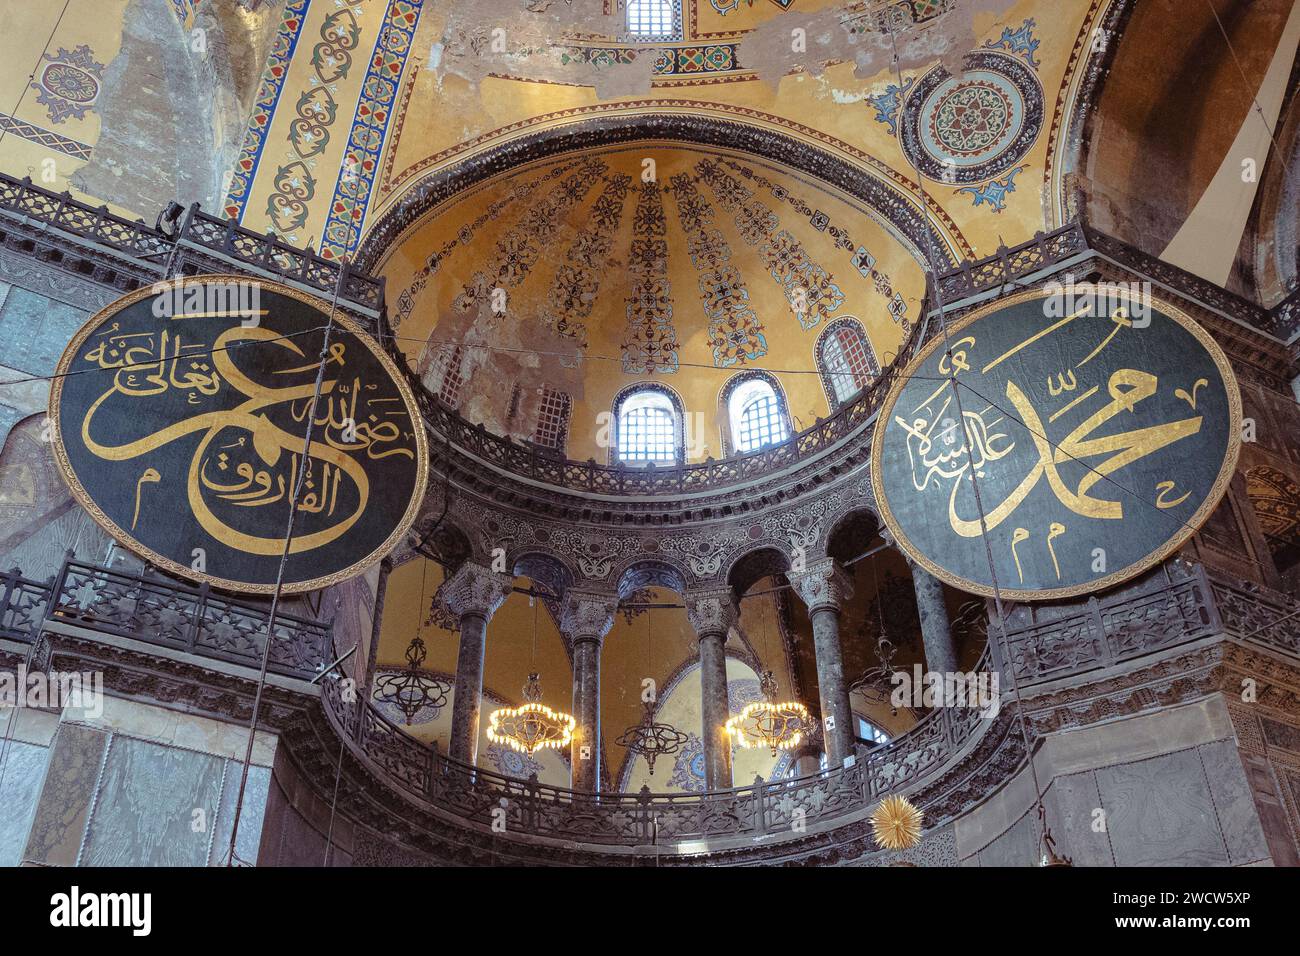 Kalligraphische Rundungen und Kuppel in der Hagia Sophia Moschee, ehemals byzantinische Kathedrale und Kulturikone der östlichen orthodoxen Welt, Istanbul Türkei Stockfoto